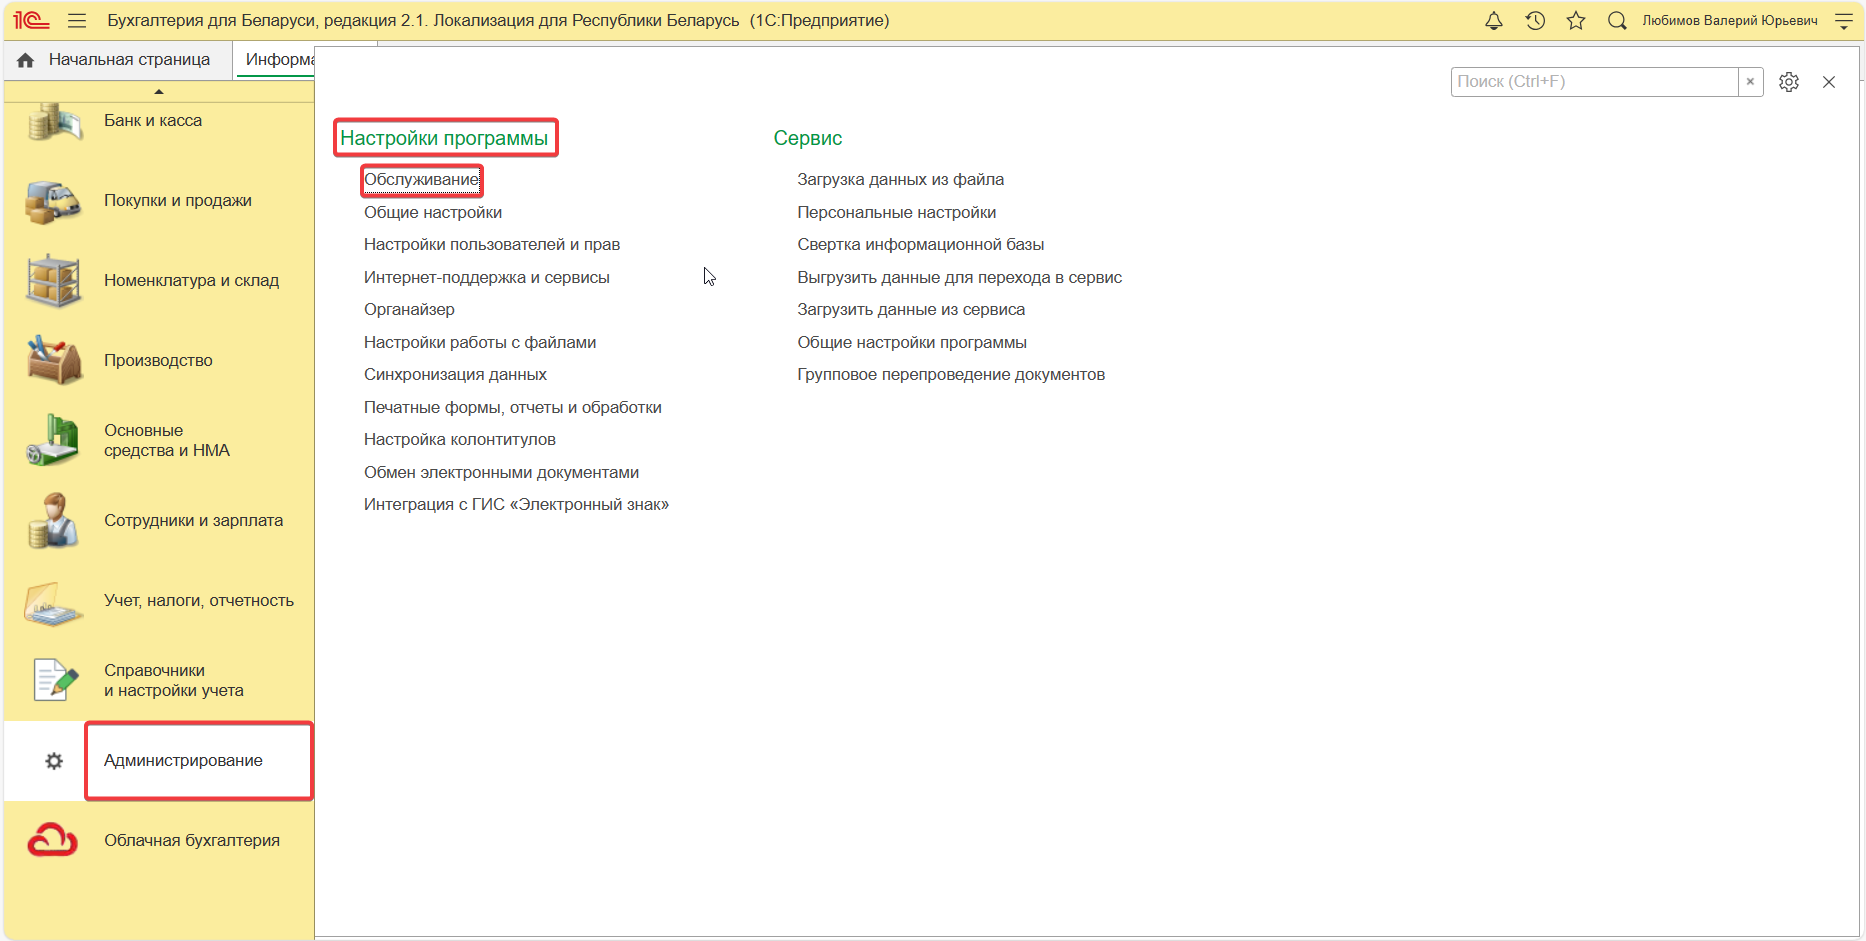 Групповое изменение реквизитов - инструкции по работе в 1С Бухгалтерия для Республики Беларусь онлайн от Облачной бухгалтерии